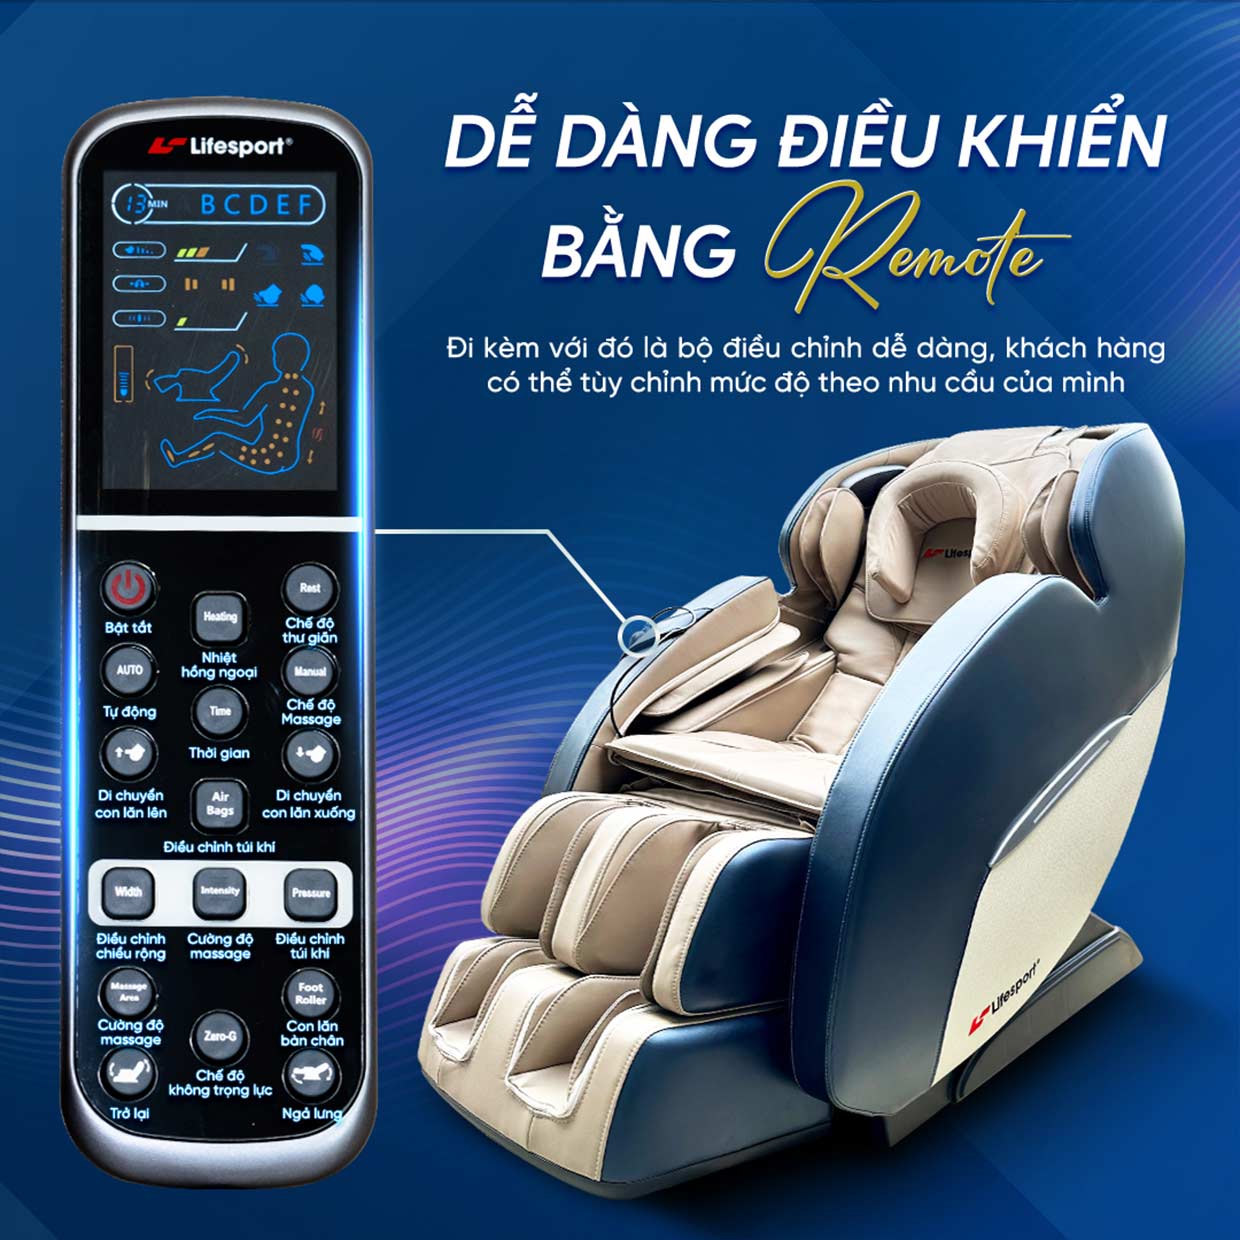 Ghế massage Lifesport LS-2200 điều khiển dễ dàng bằng remote